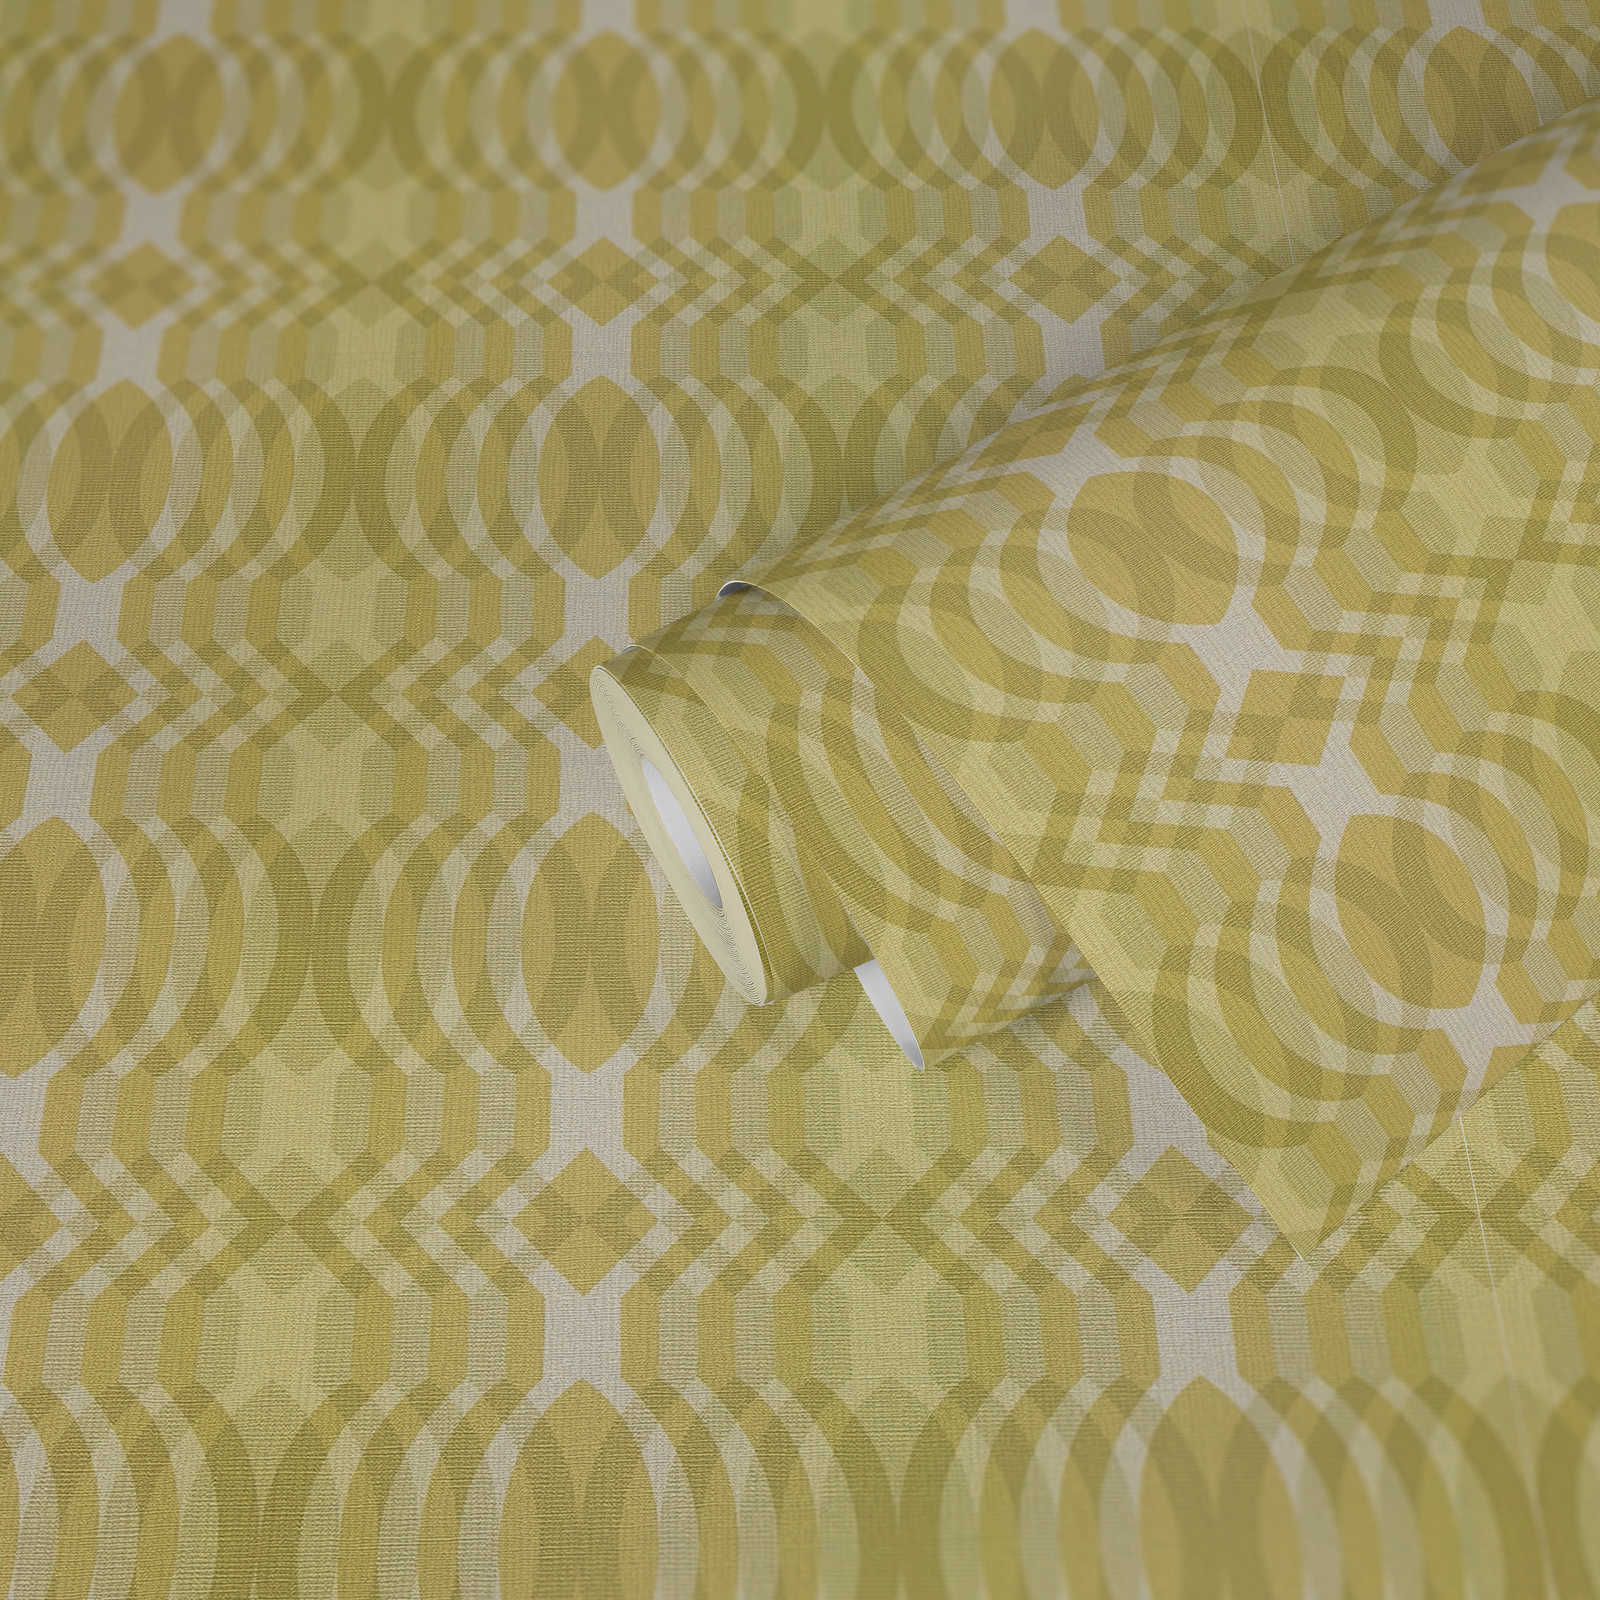             Vliesbehang in retrostijl met geometrisch patroon - groen, crème, wit
        